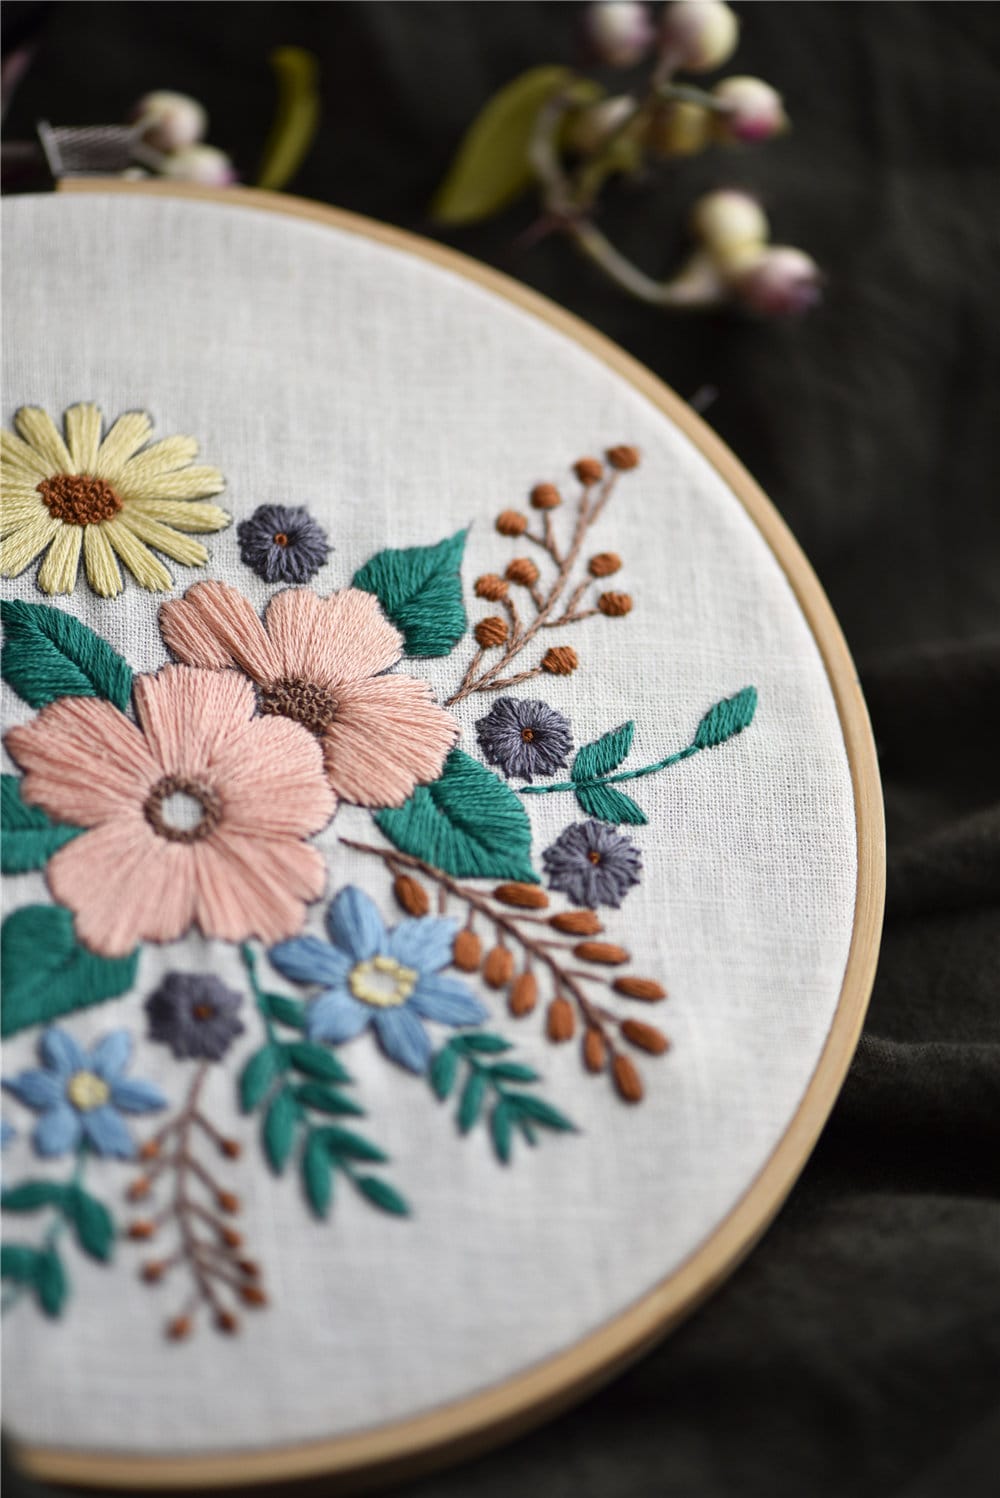 KARLSITEK Hand Beginner Embroidery kit for Adults,Easy Cross